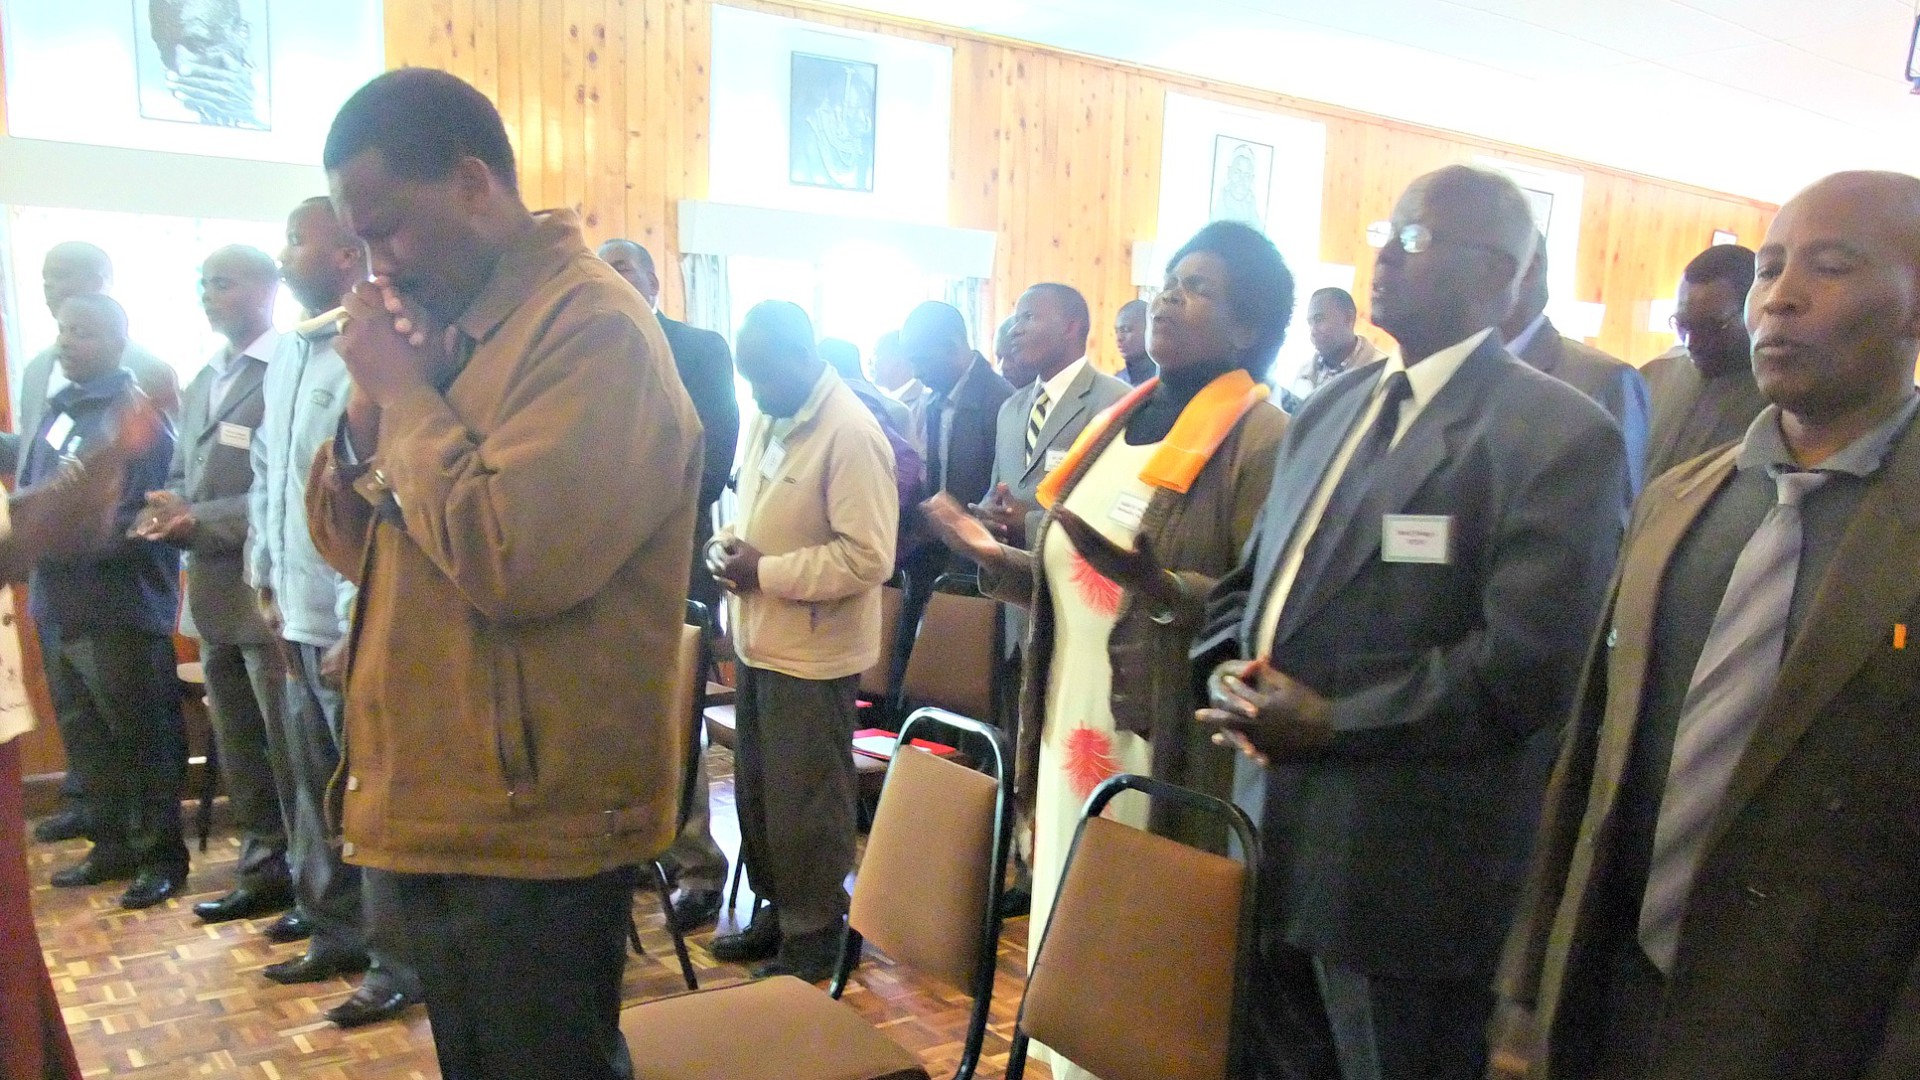 Les fidèles kényans se sentent sous pression du gouvernement (Photo d'illustration:ARC/Flickr/CC BY 2.0)